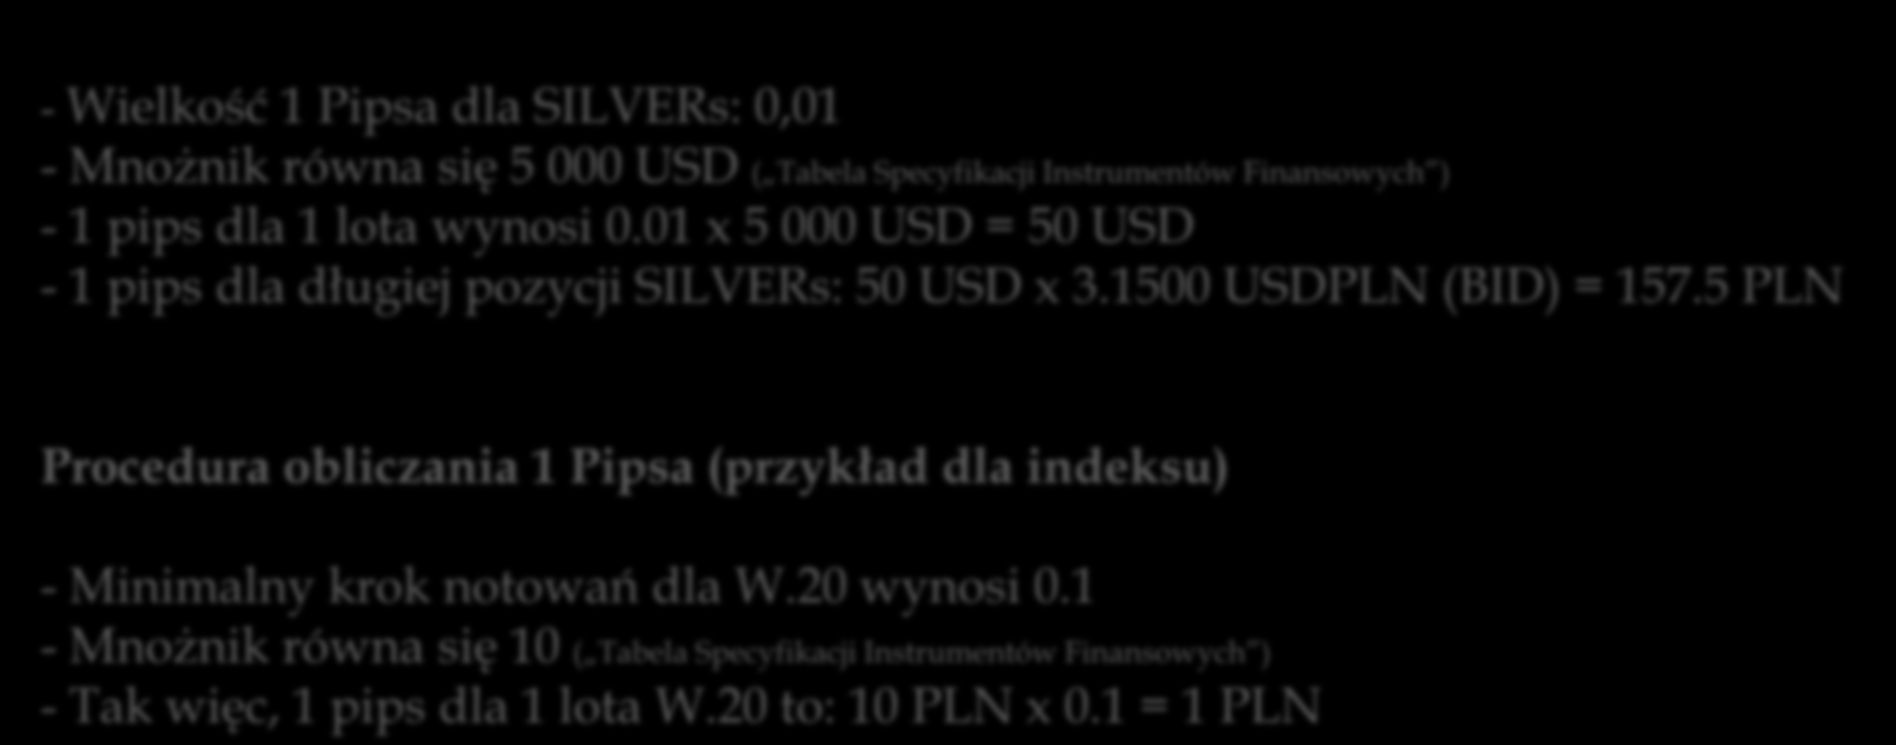 PIPS najmniejsza możliwa zmiana ceny Procedura obliczania 1 Pipsa (przykład dla surowców) - Wielkość 1 Pipsa dla SILVERs: 0,01 - Mnożnik równa się 5 000 USD ( Tabela Specyfikacji Instrumentów